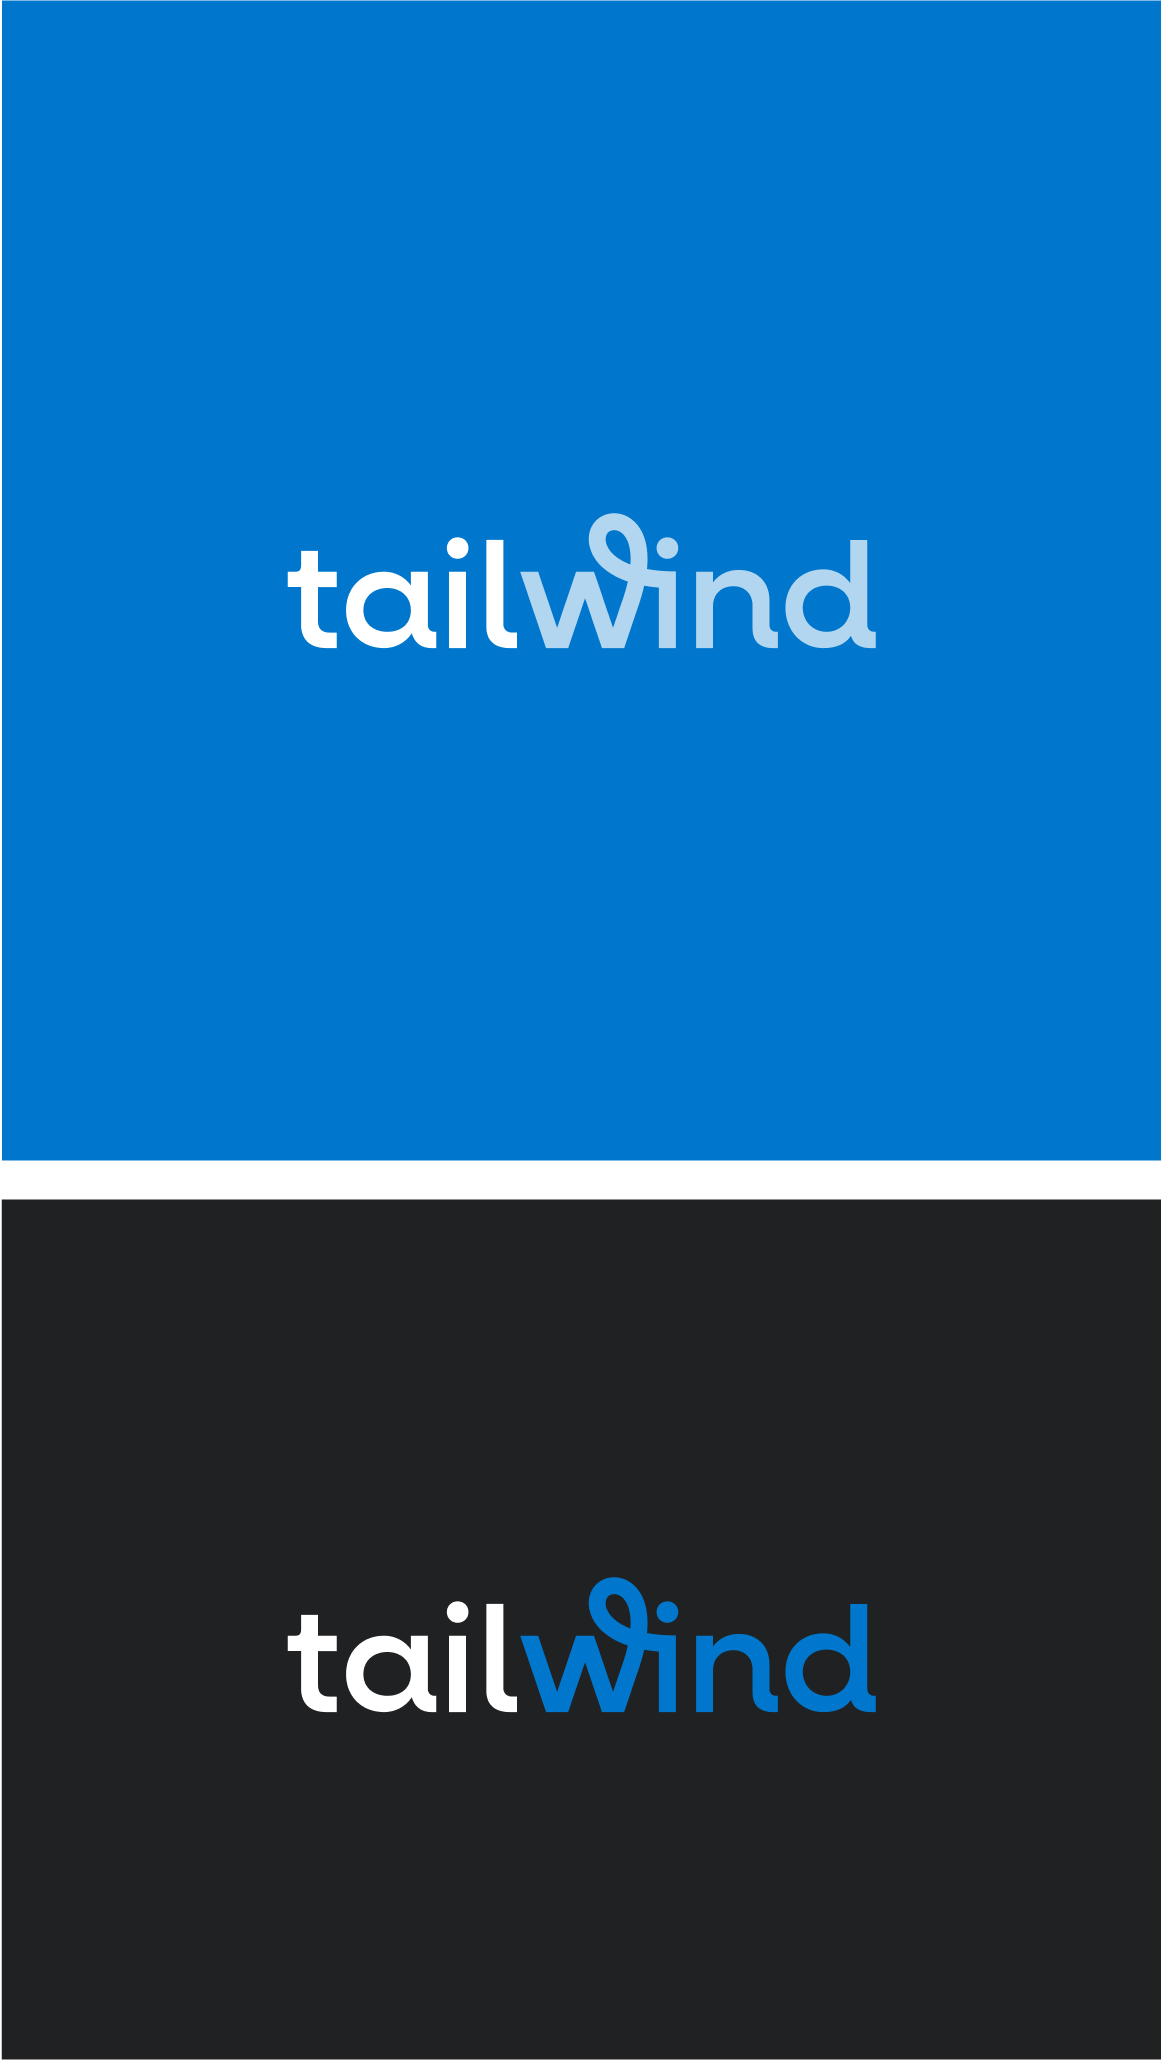 Với cải tiến và cập nhật liên tục, Tailwind CSS 3.0 đem đến cho bạn những tính năng mới đầy màu sắc và giúp cho quá trình thiết kế web trở nên đơn giản và được tối ưu hóa hơn bao giờ hết. Hãy xem hình ảnh liên quan để biết thêm chi tiết về Tailwind CSS phiên bản 3.